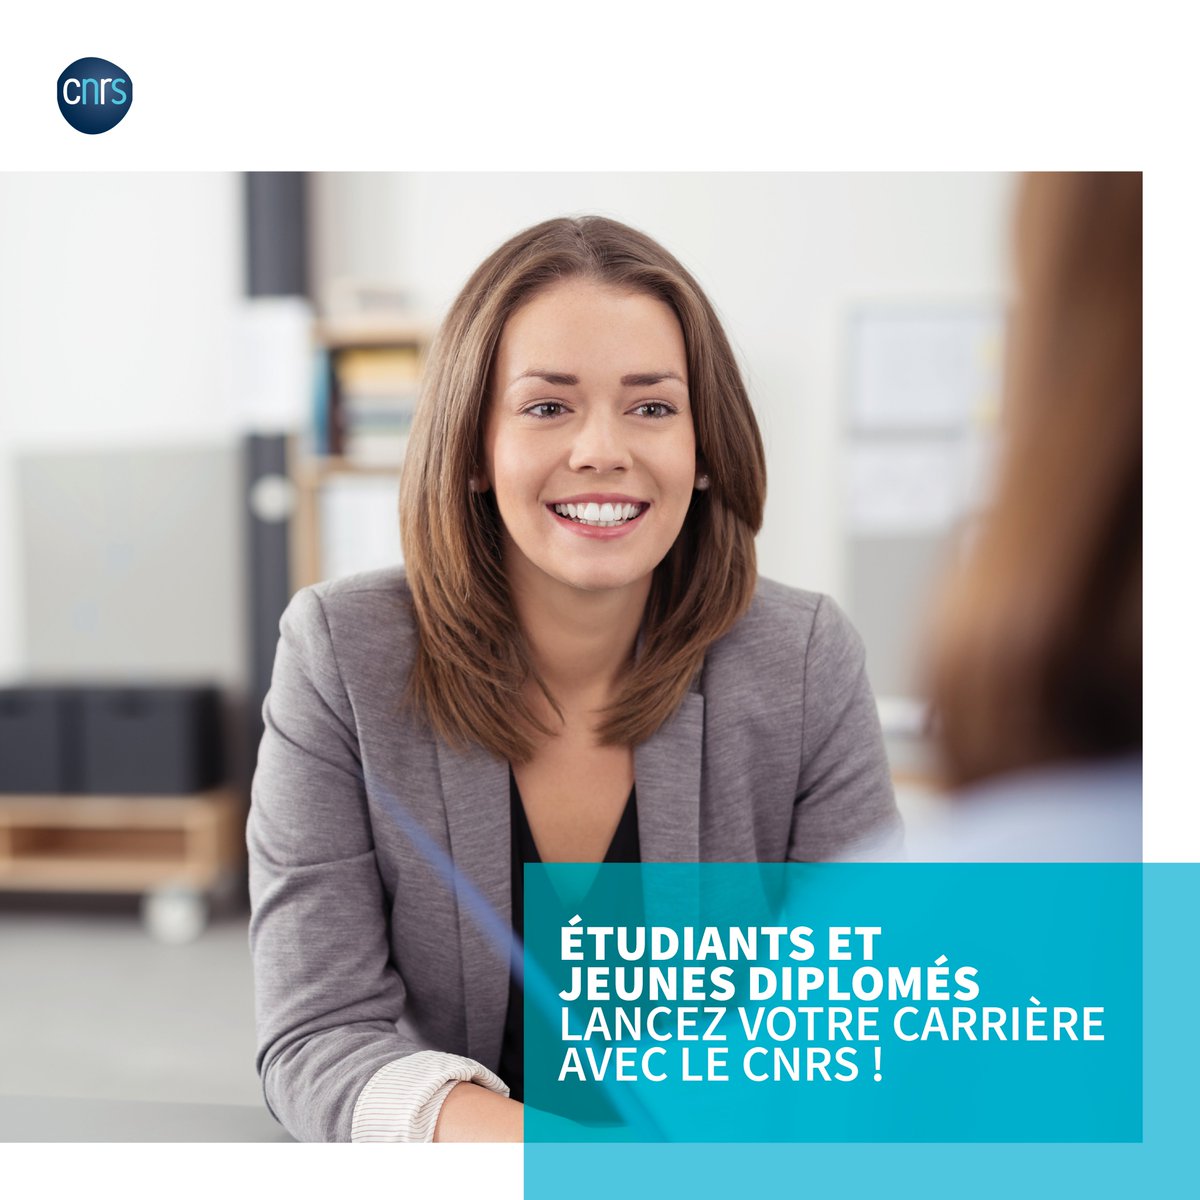 💼 Étudiants et jeunes diplômés, lancez votre carrière avec le @CNRS ! Venez découvrir les opportunités professionnelles offertes par le CNRS sur son stand au Forum Entreprises organisé le jeudi 19 octobre, de 10h à 17h, à @Polytech_Saclay. ▶ forum-entreprises.bby-developpement.fr